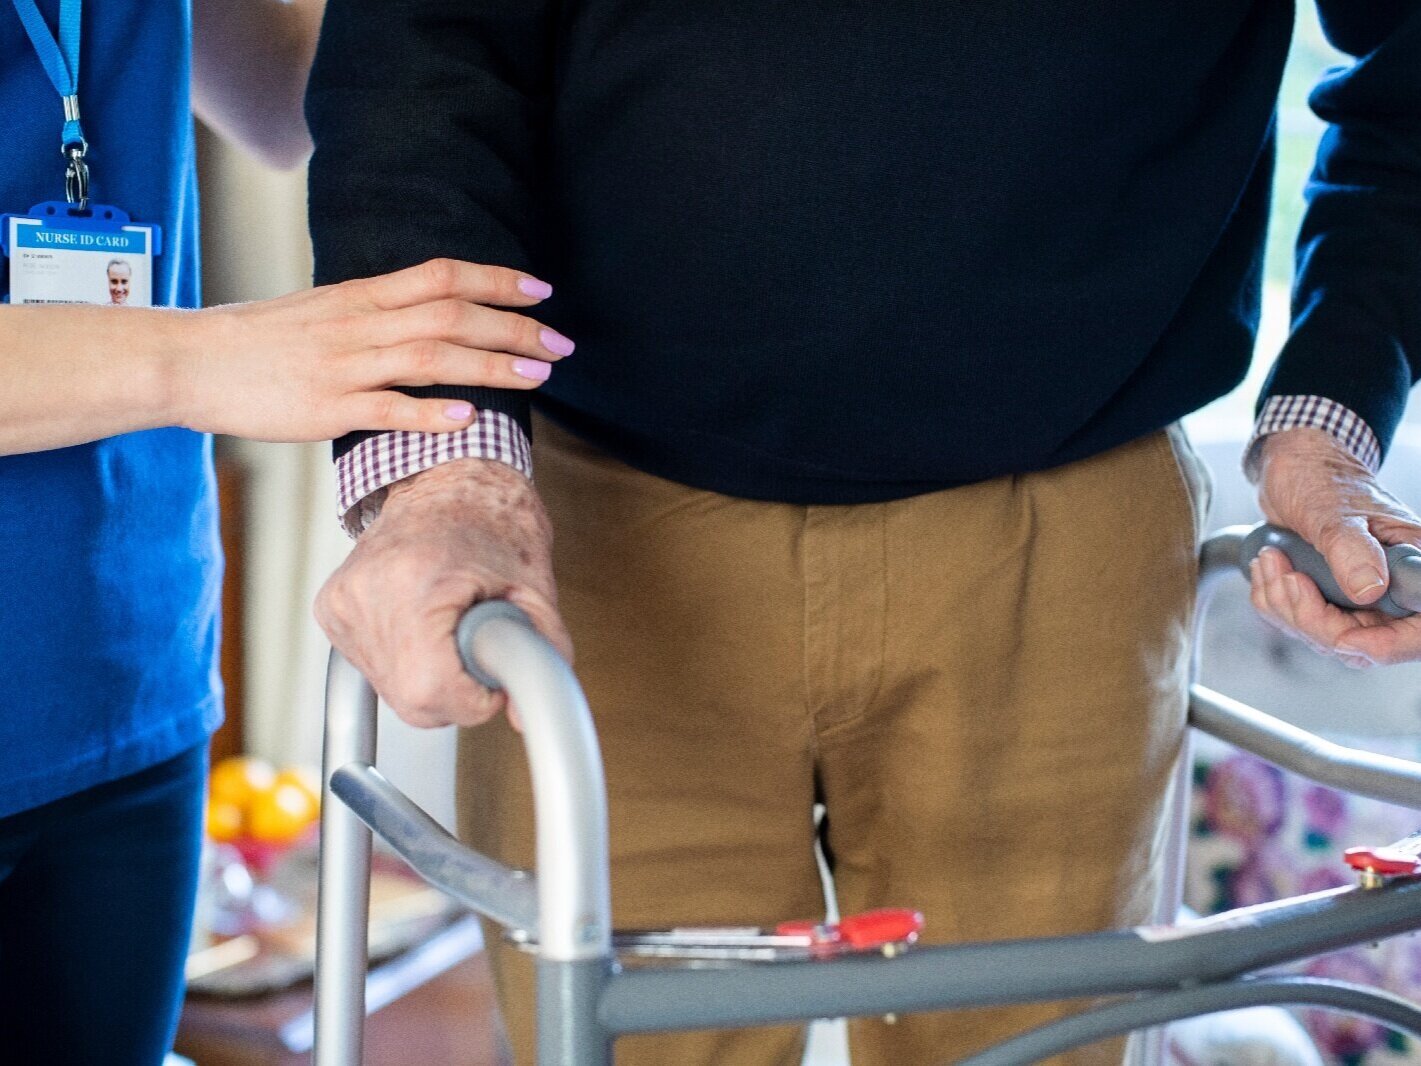 Nurse helping elderly patient use walker